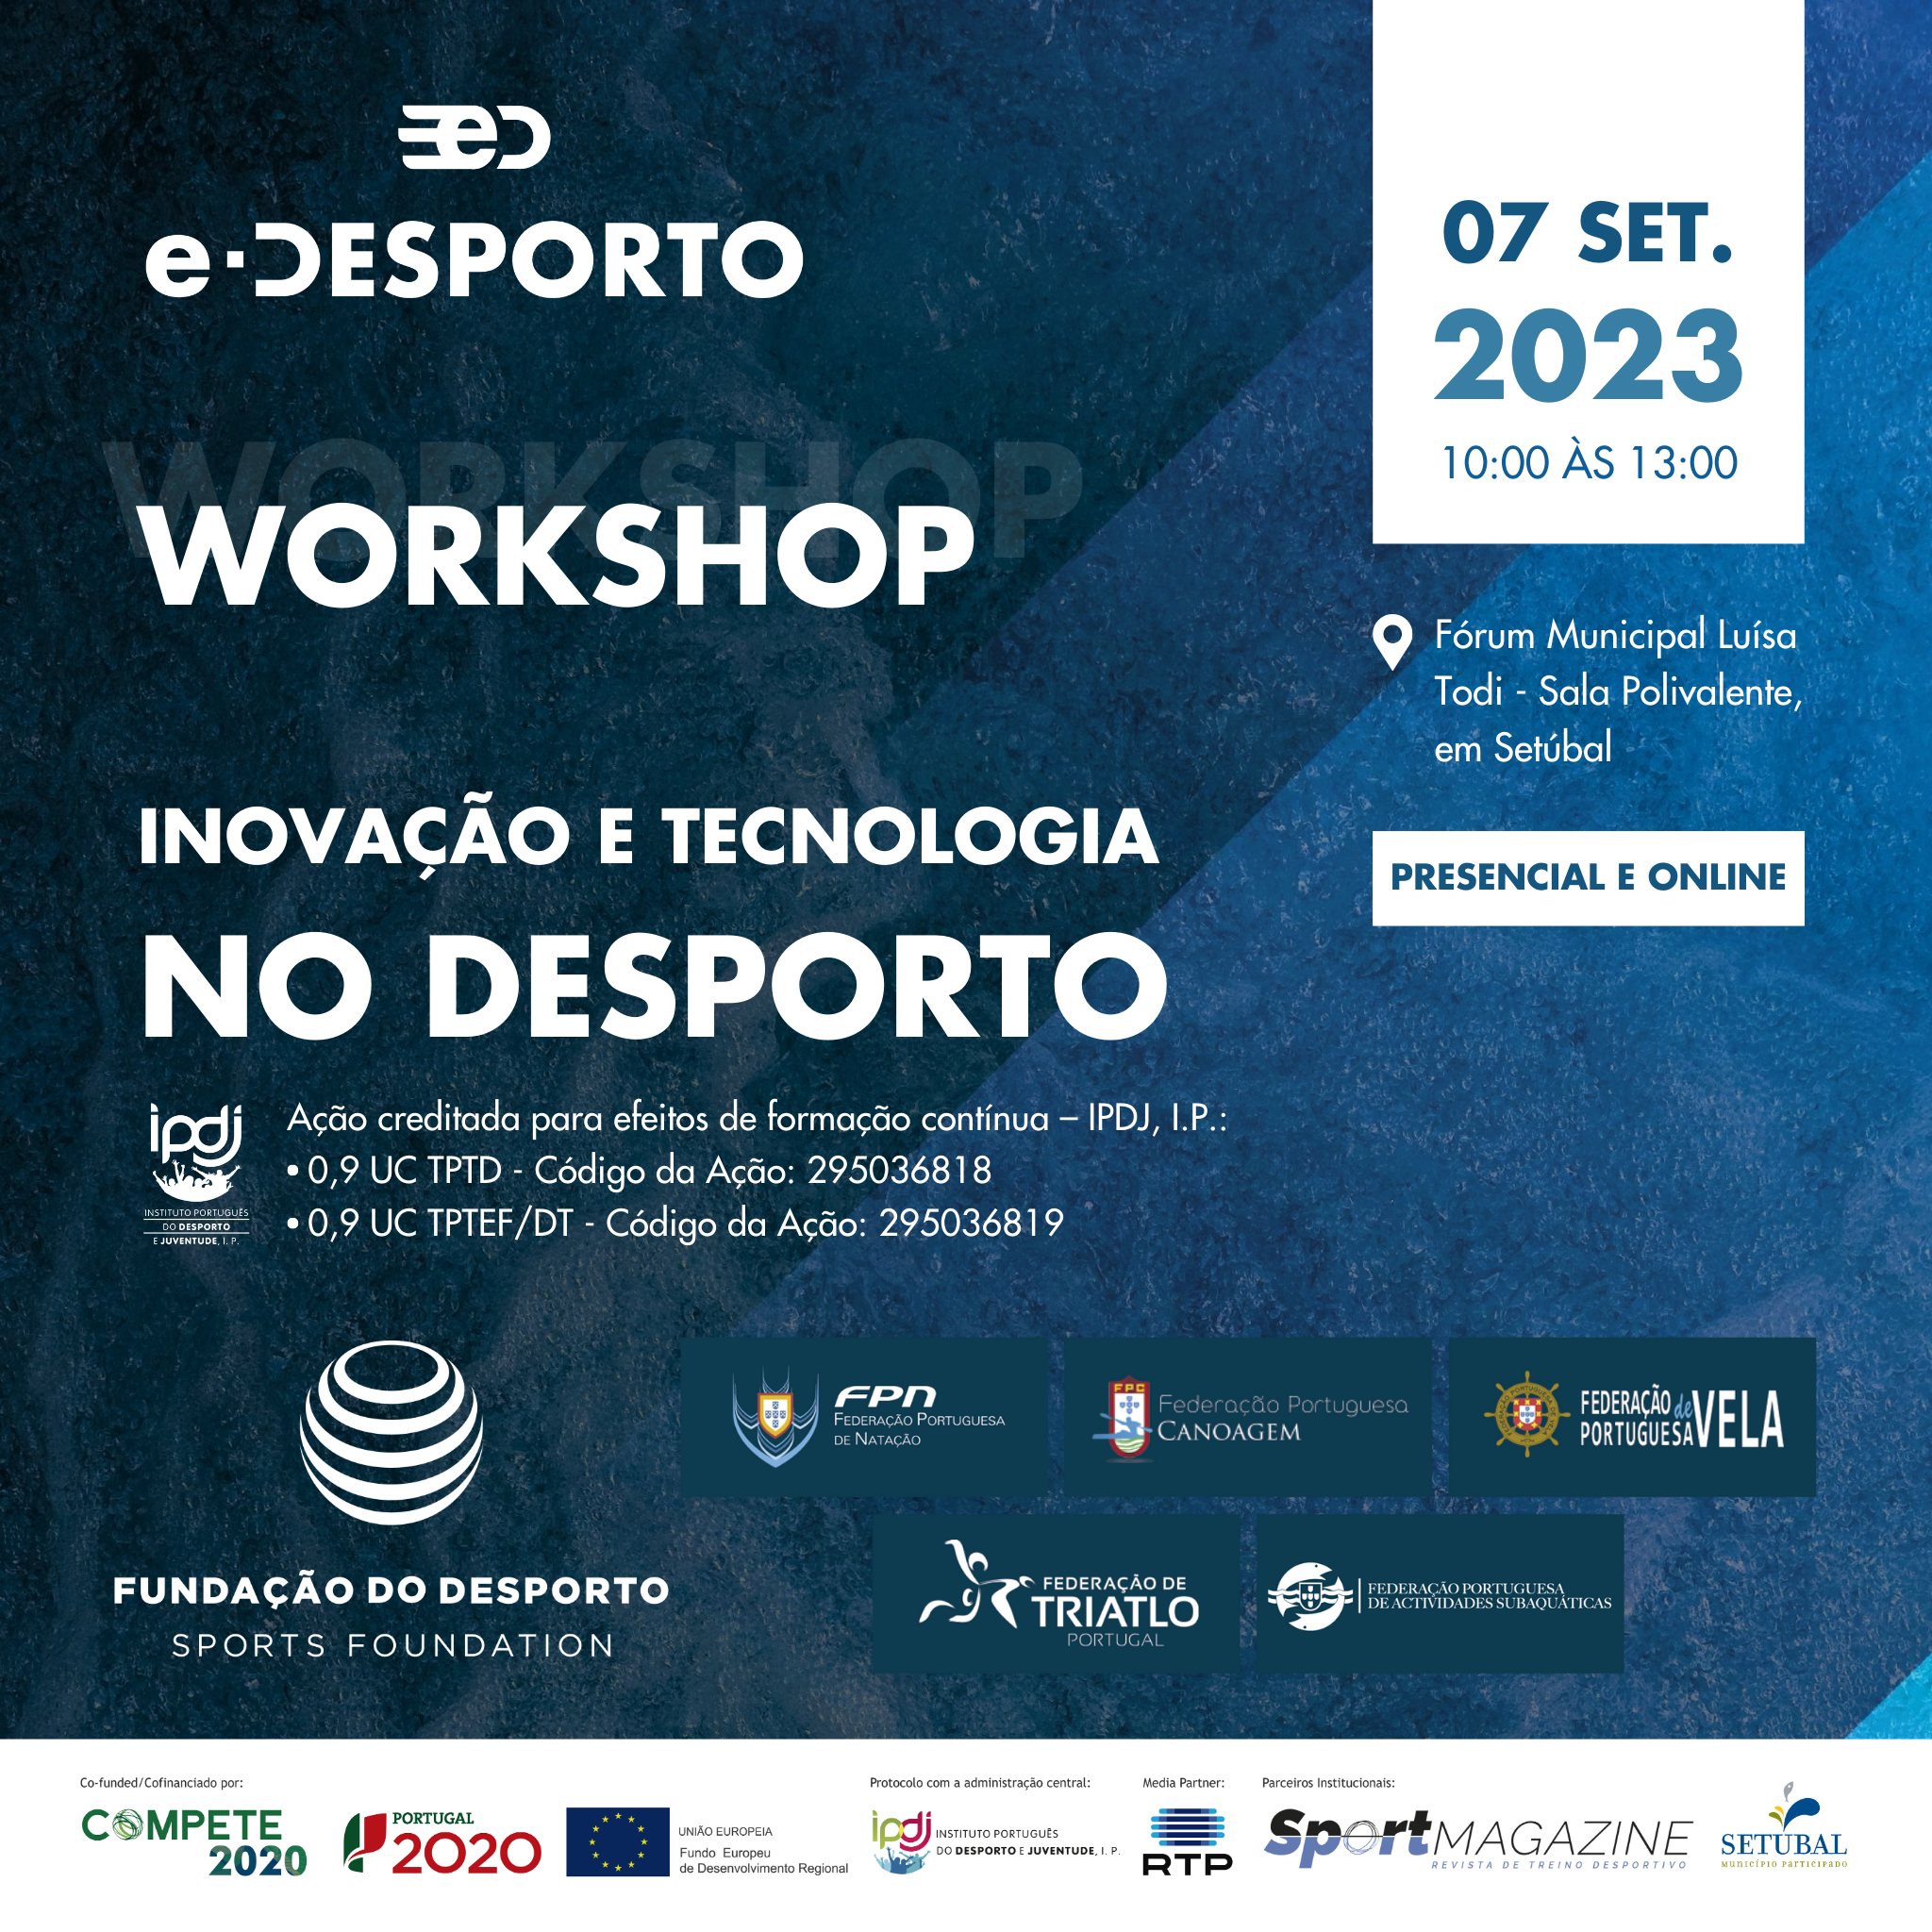 Workshop “Inovação e Tecnologia no Desporto” no dia 7 de setembro